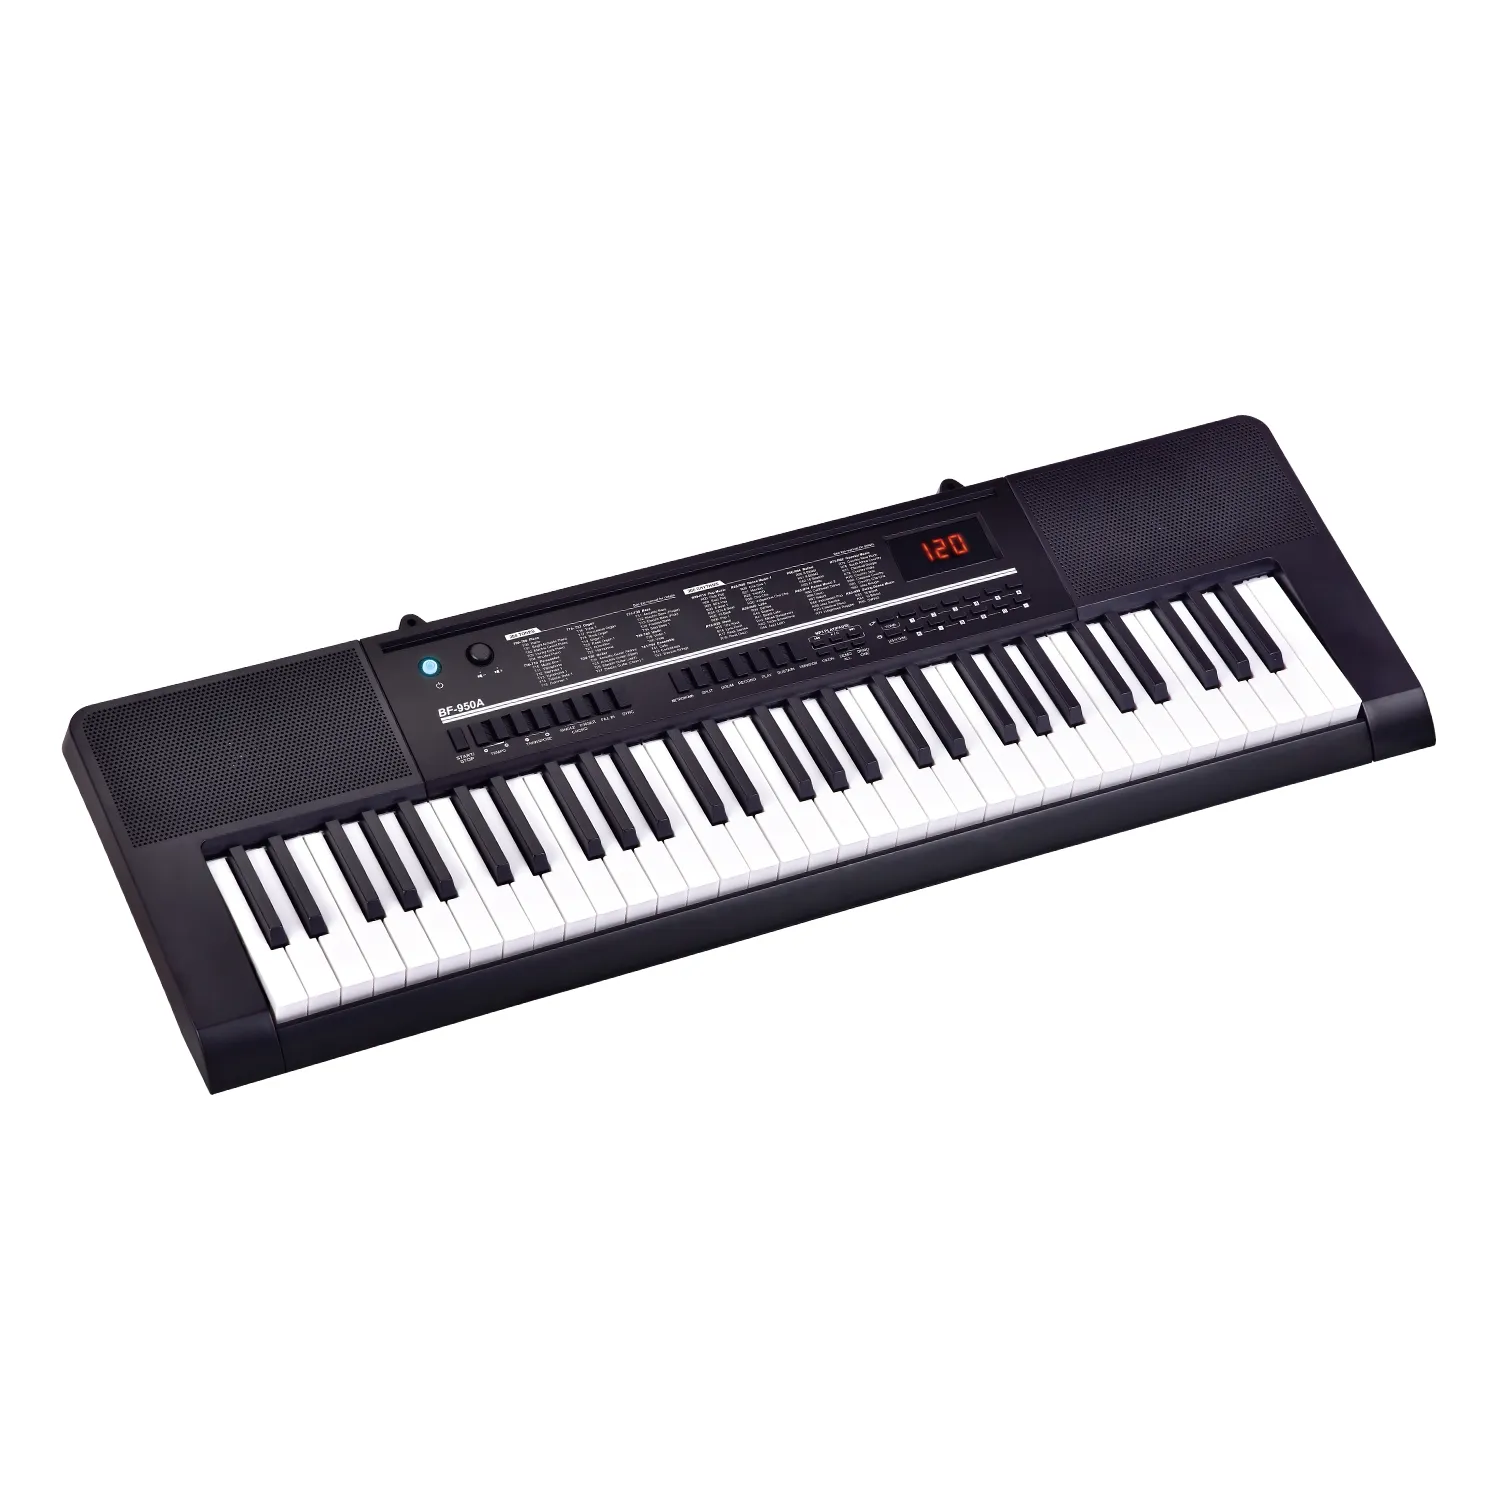 BF-950A высококачественные Музыкальные инструменты электронная клавиатура с 61 клавишами